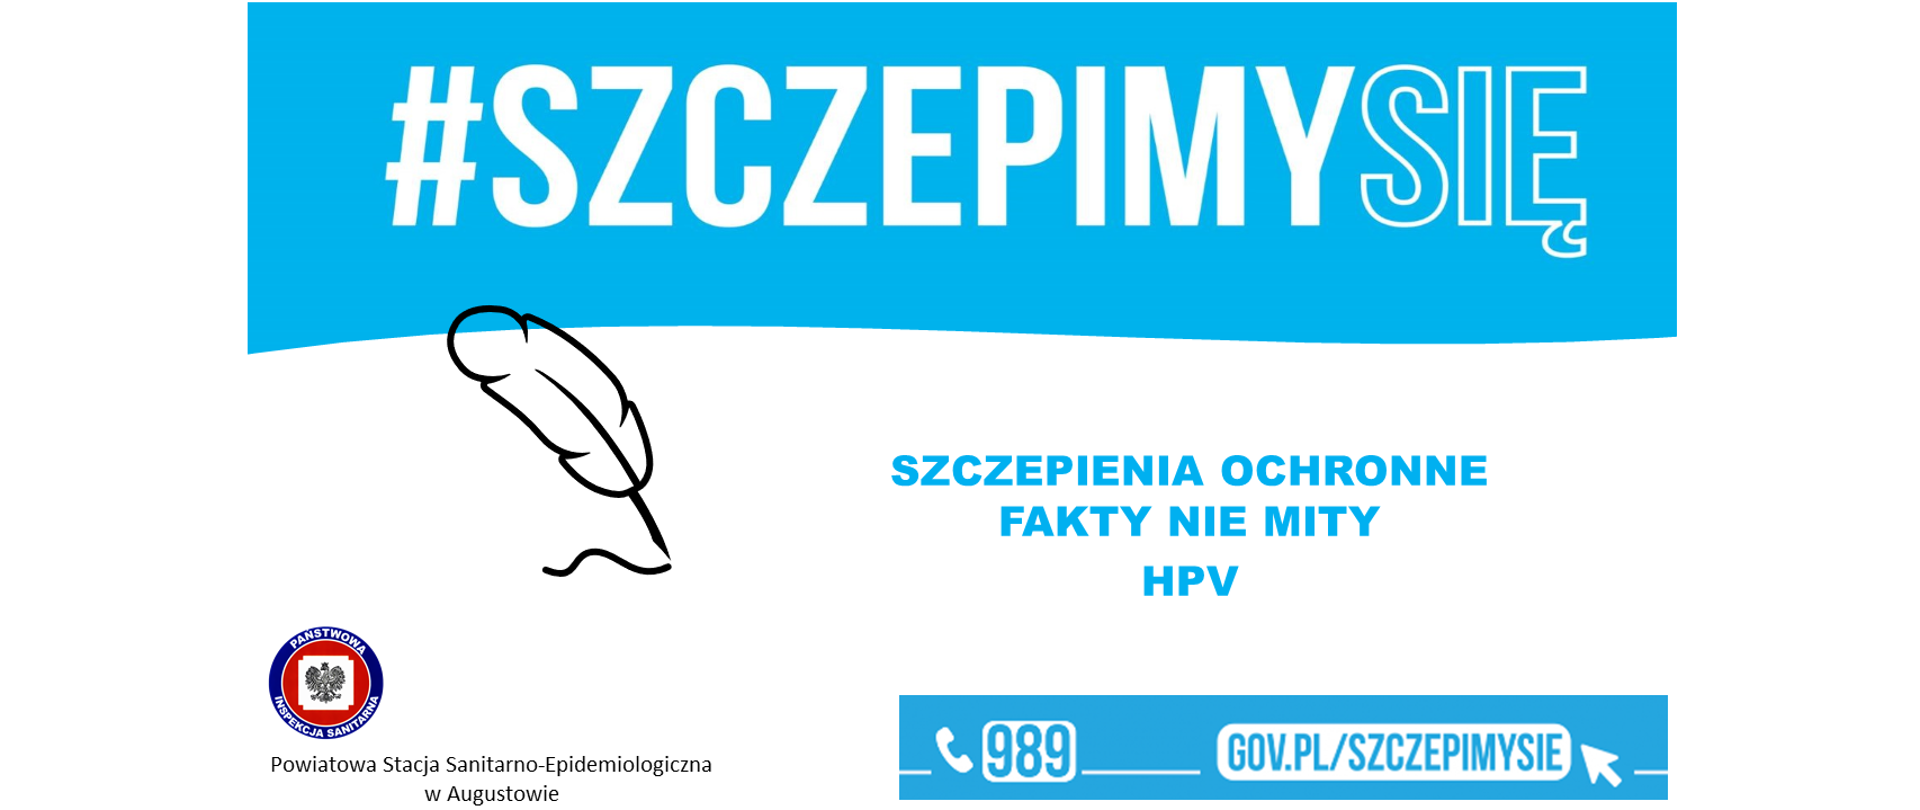 HPV_Szczepimy_PSSE_AUG_szata